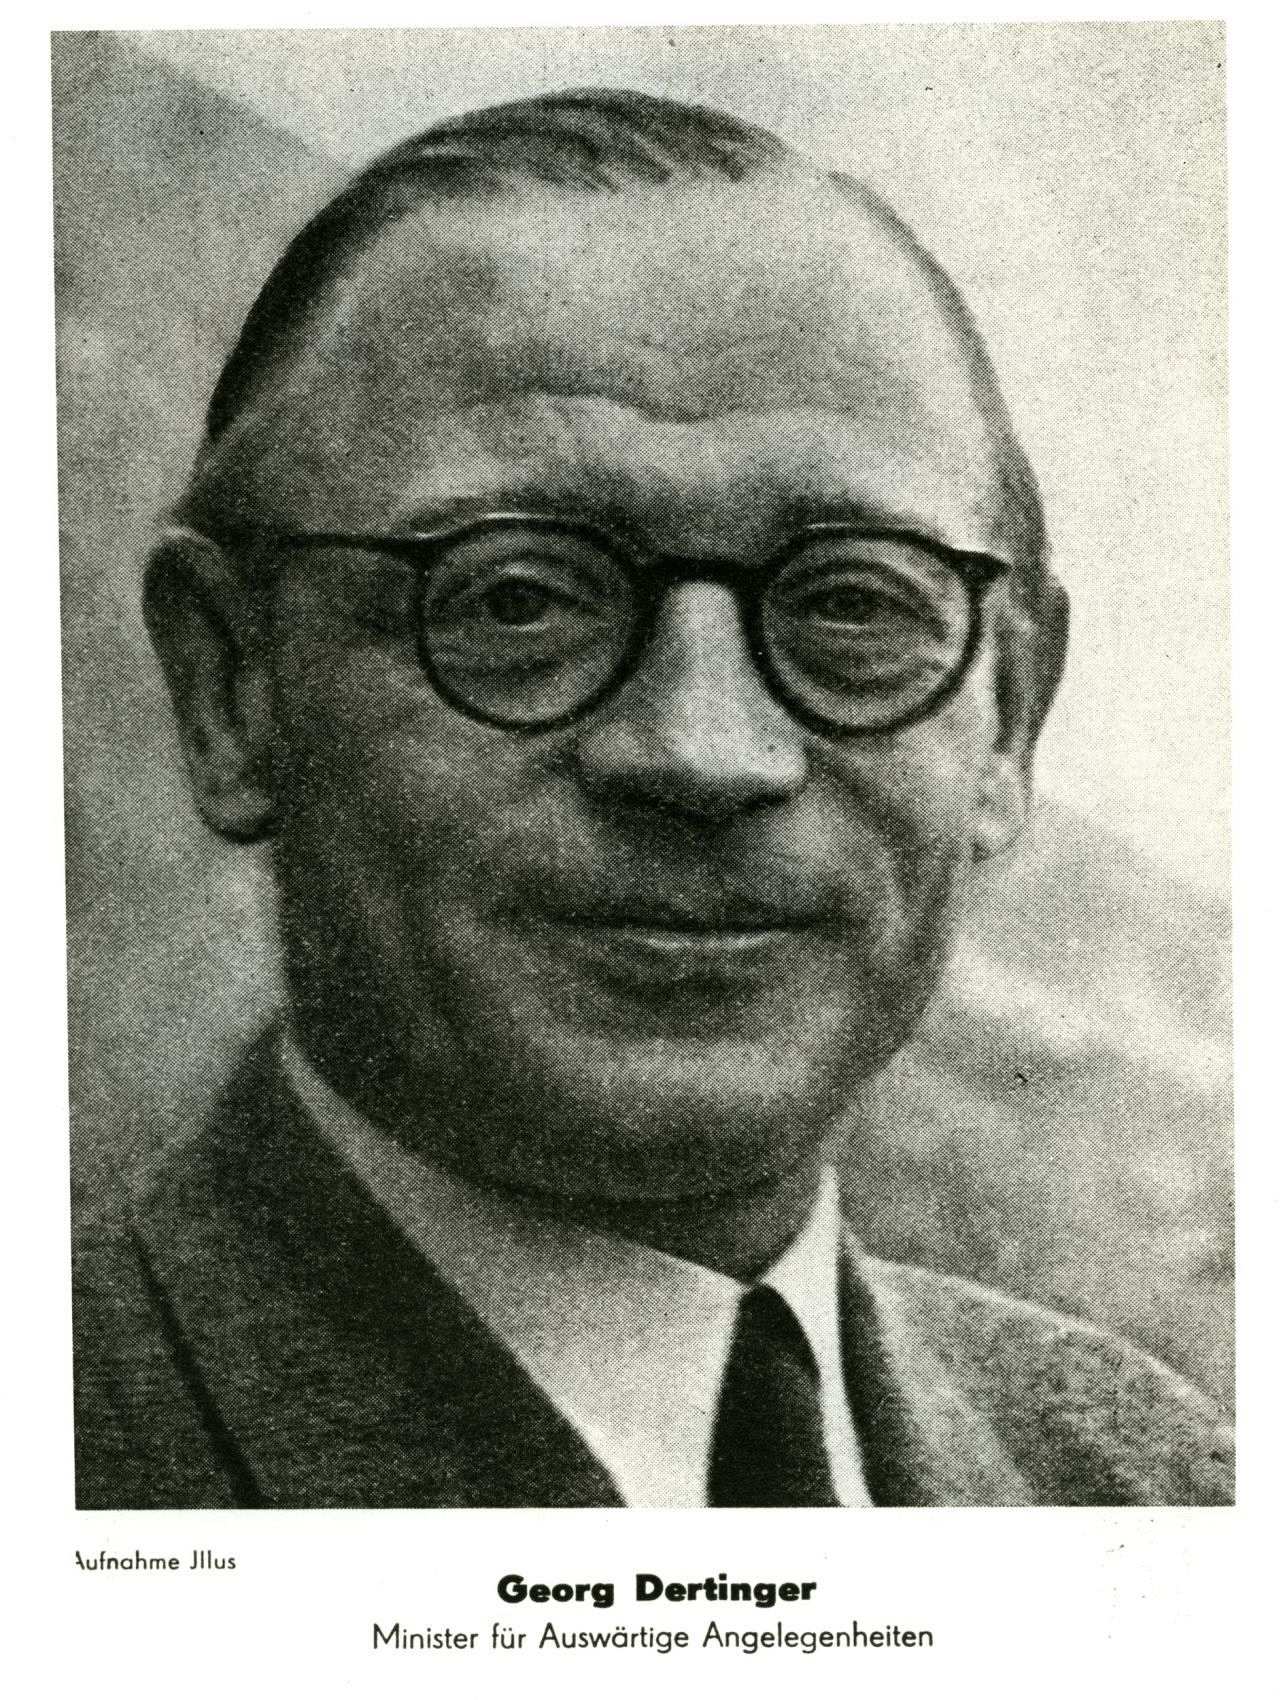 Porträtfoto von Georg Dertinger (Minister für Auswärtige Angelegenheiten der DDR), 1949.